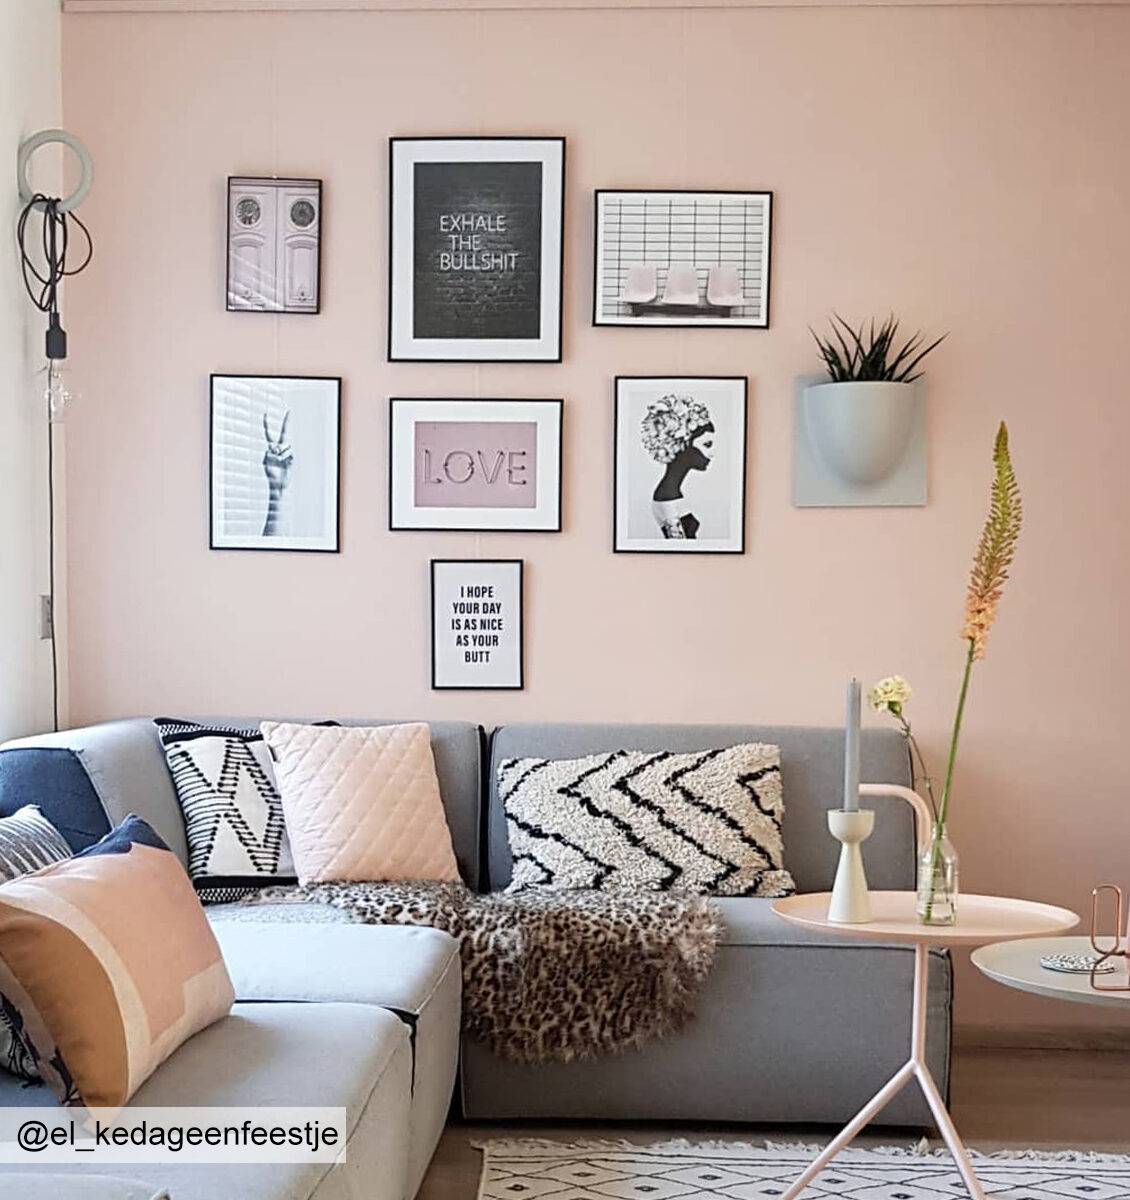 NL roze muur met lijsten als gallery wall opgehangen aan het flexibele ophangsysteem van Artiteq